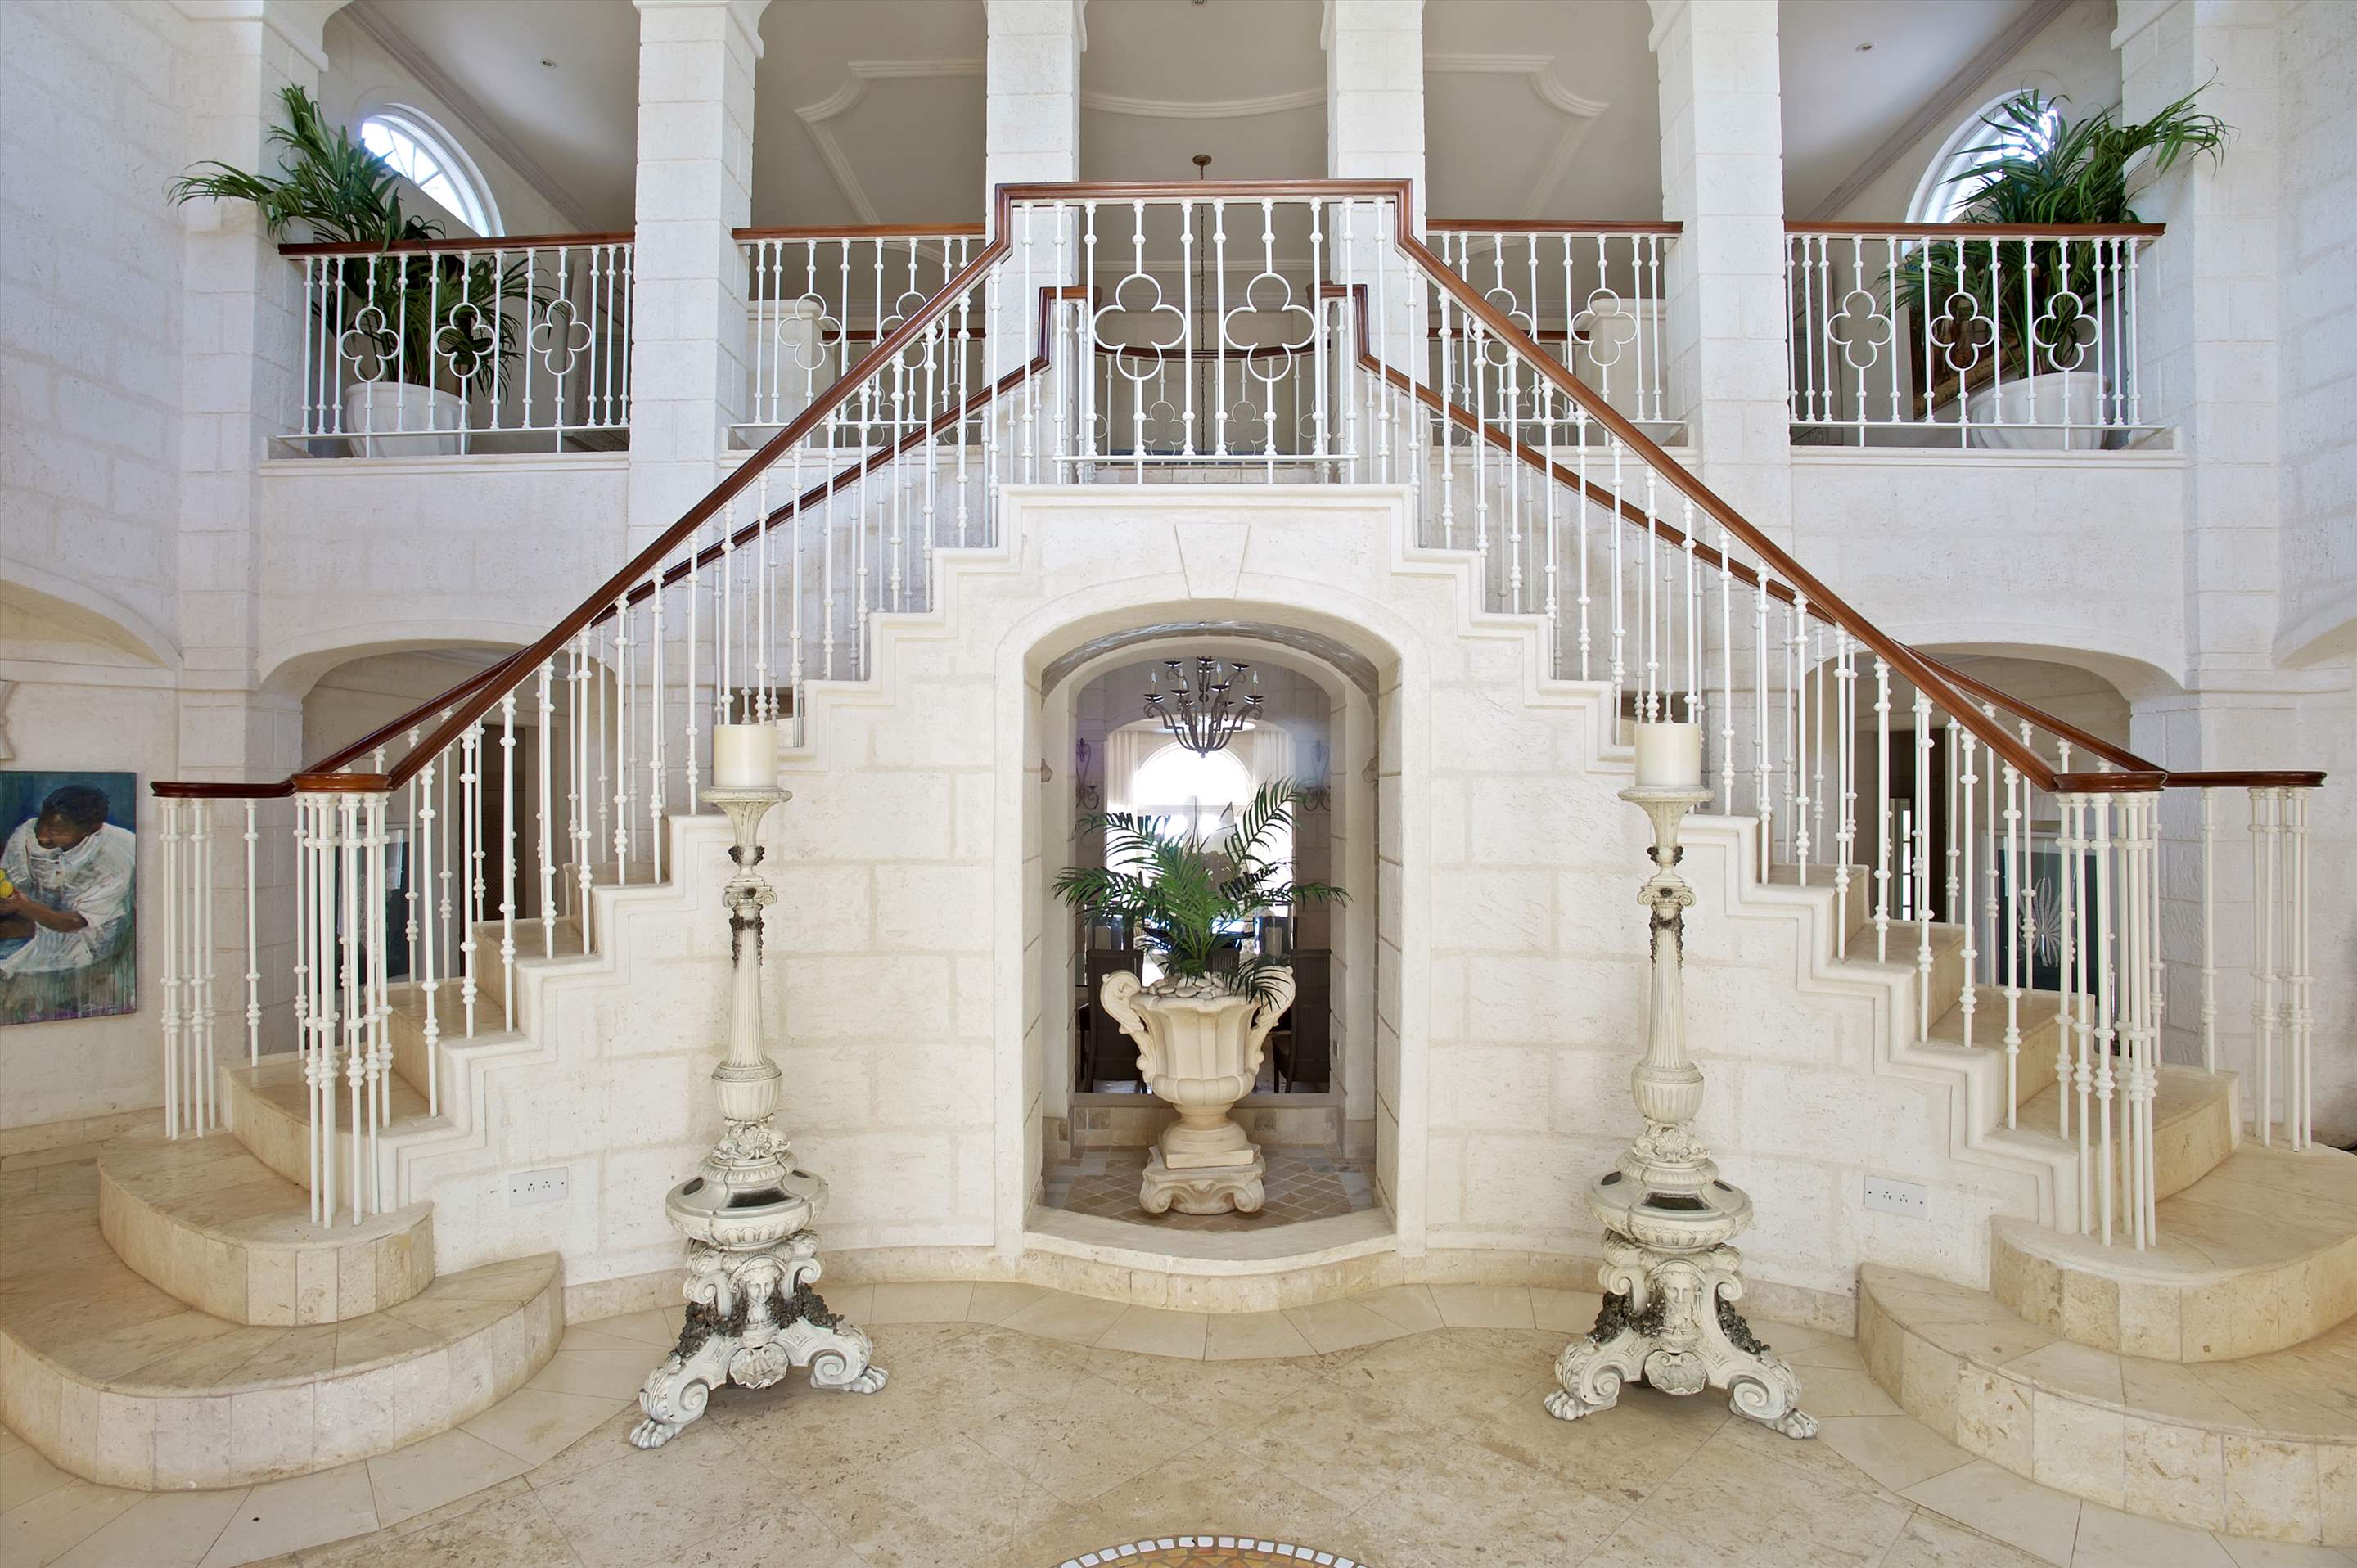 Plantation House, Royal Westmoreland, 4 bedroom, 4 bedroom villa in St. James & West Coast, Barbados Photo #5